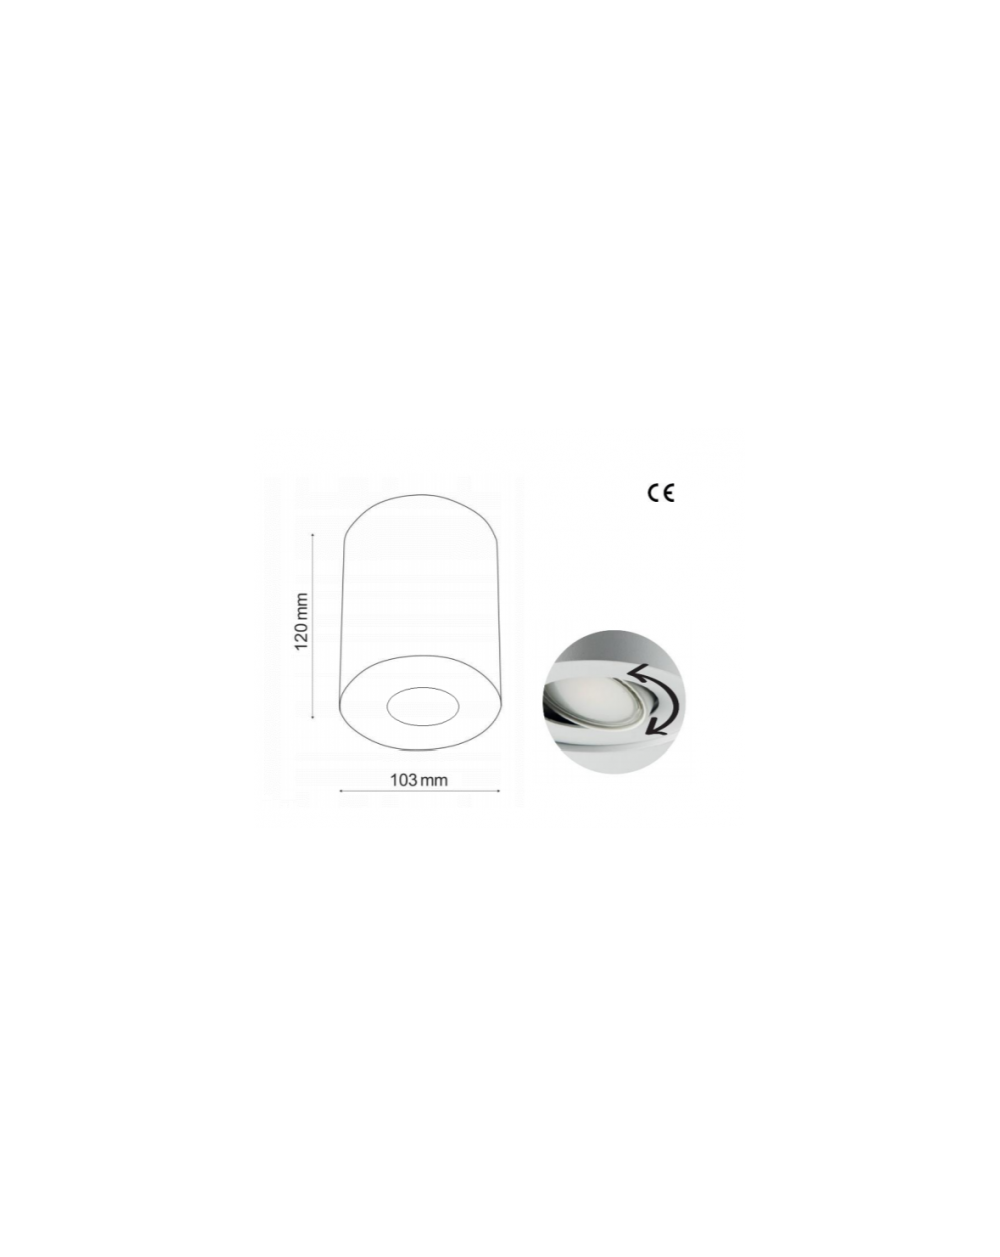 Natynkowa lampa sufitowa MyTube NT GU10 - Mistic oprawa okrągła mat biały/srebrny wysokość 120 mm z regulacją źródła światła